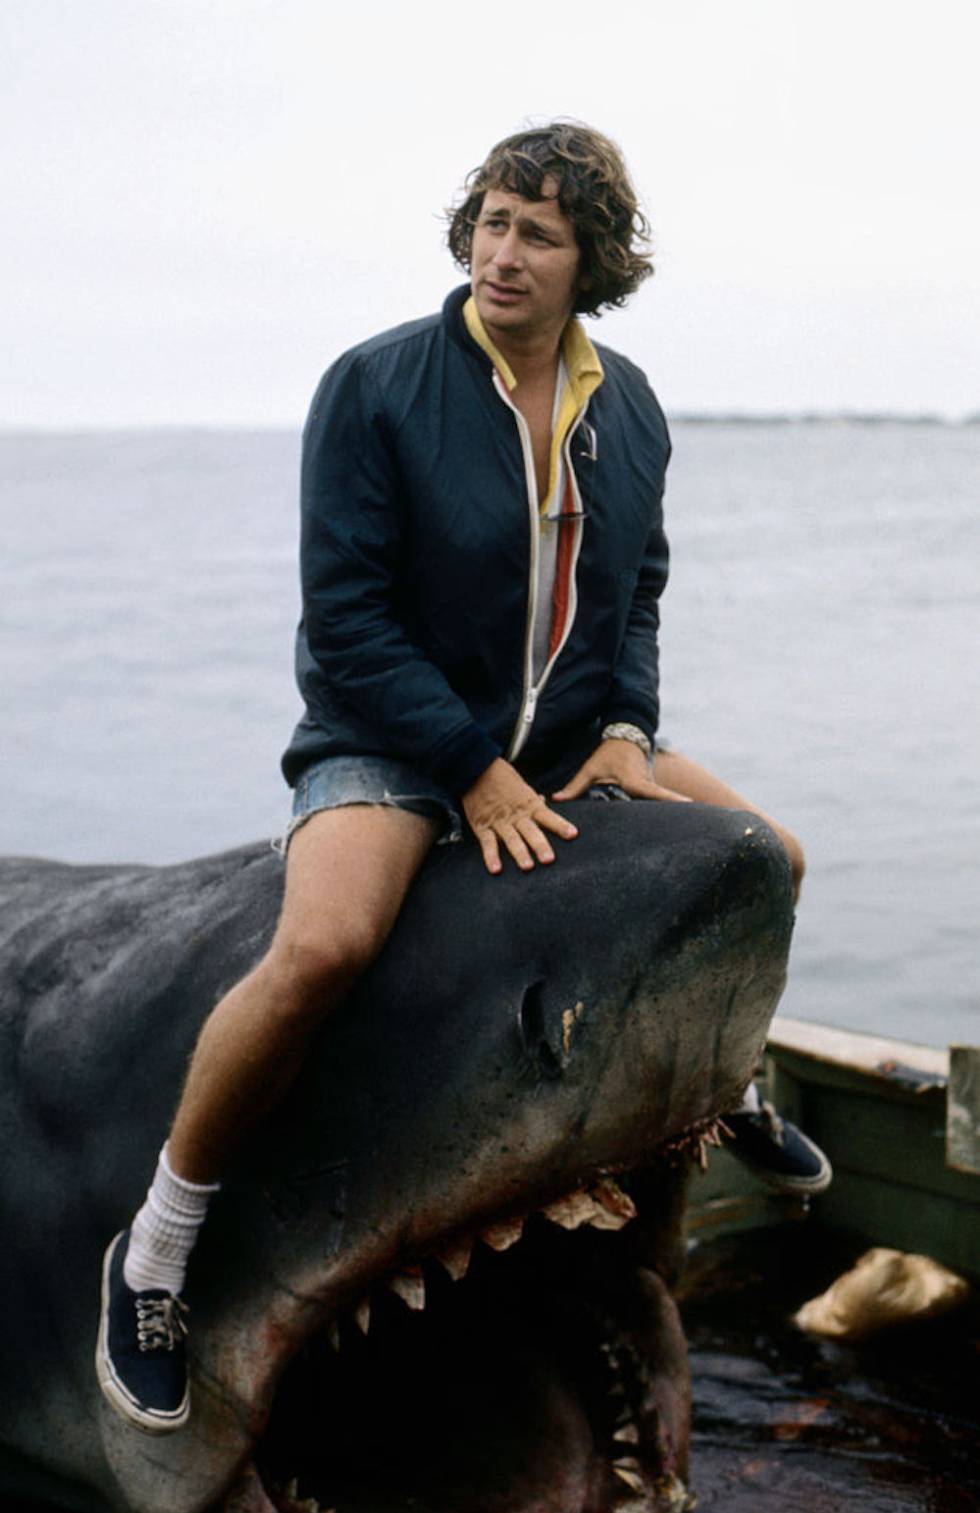 Esta foto de Steven Spielberg sobre un tiburón no sería del gusto de ningún defensor de los animales si no fuese porque es un tiburón de atrezzo.